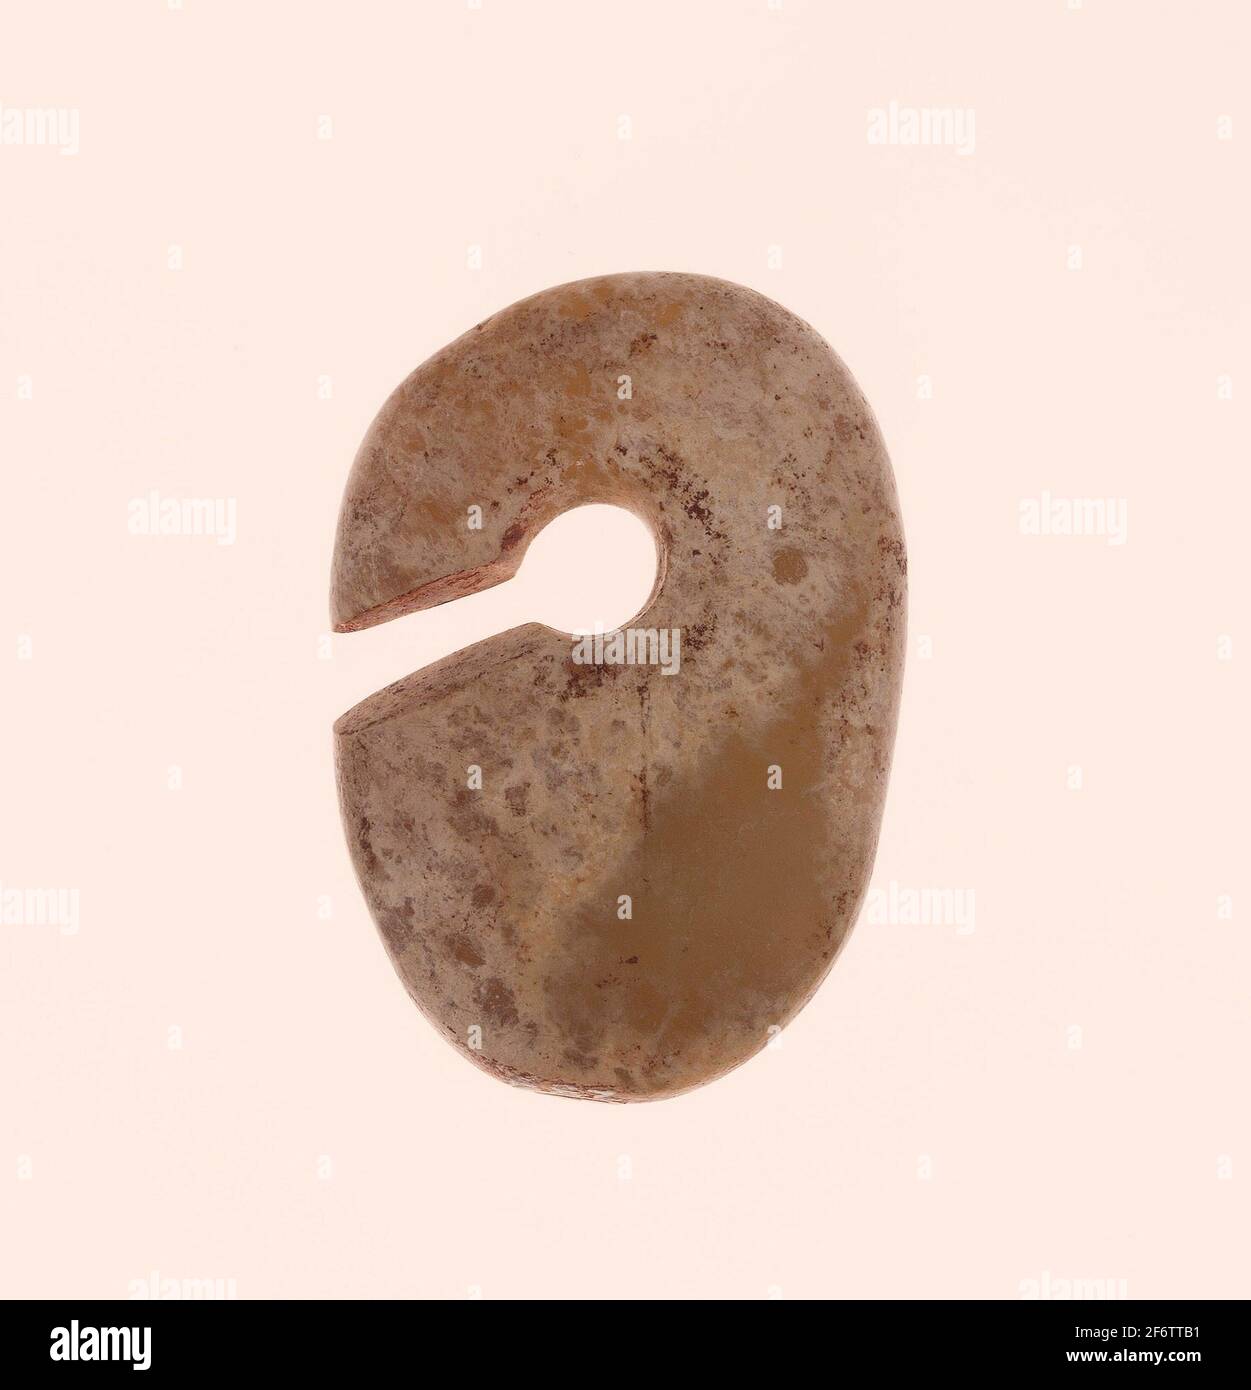 Schlitz Oval Ring (Jue)-Neolithische Periode, 5./4. Jahrtausend v.  Chr.-China. Jade. 5000 V. CHR.-3000 V. CHR Stockfotografie - Alamy